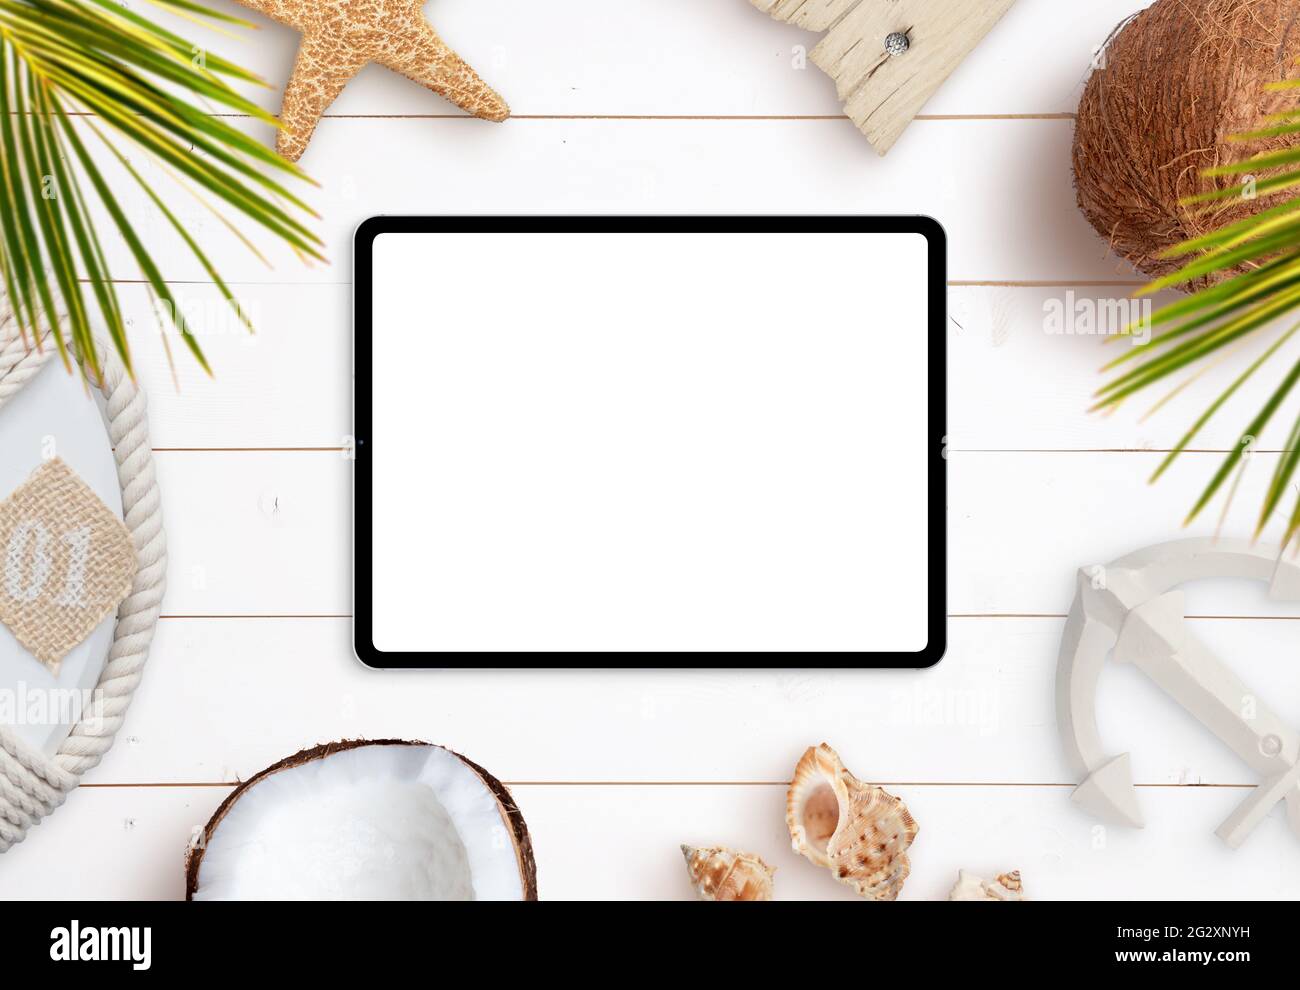 Maquette de tablette sur un bureau en bois blanc entouré de feuilles de palmier, d'étoiles de mer, de coquillages, de noix de coco, de ceintures de sauvetage et d'ancre. Été, voyage, vue de dessus, plat être Banque D'Images